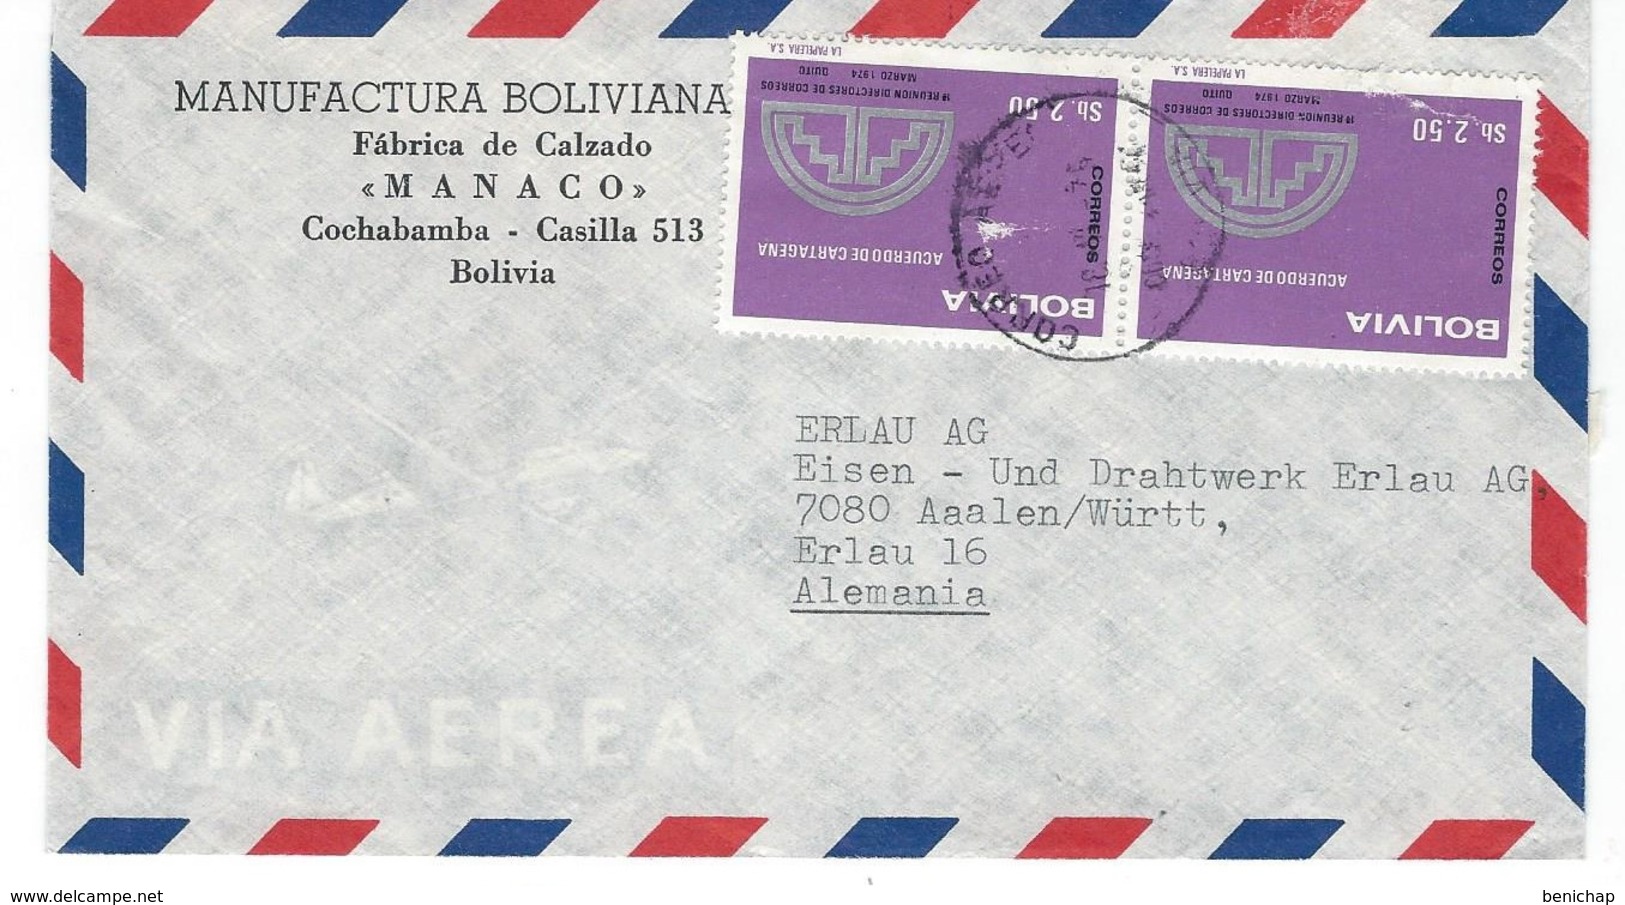 COVER CORREO BOLIVIA - VIA AIR MAIL - MANUFACTURA BOLIVIANA - FABRICA DE CALZADO - COCHABAMBA - ALEMANIA. - Bolivie